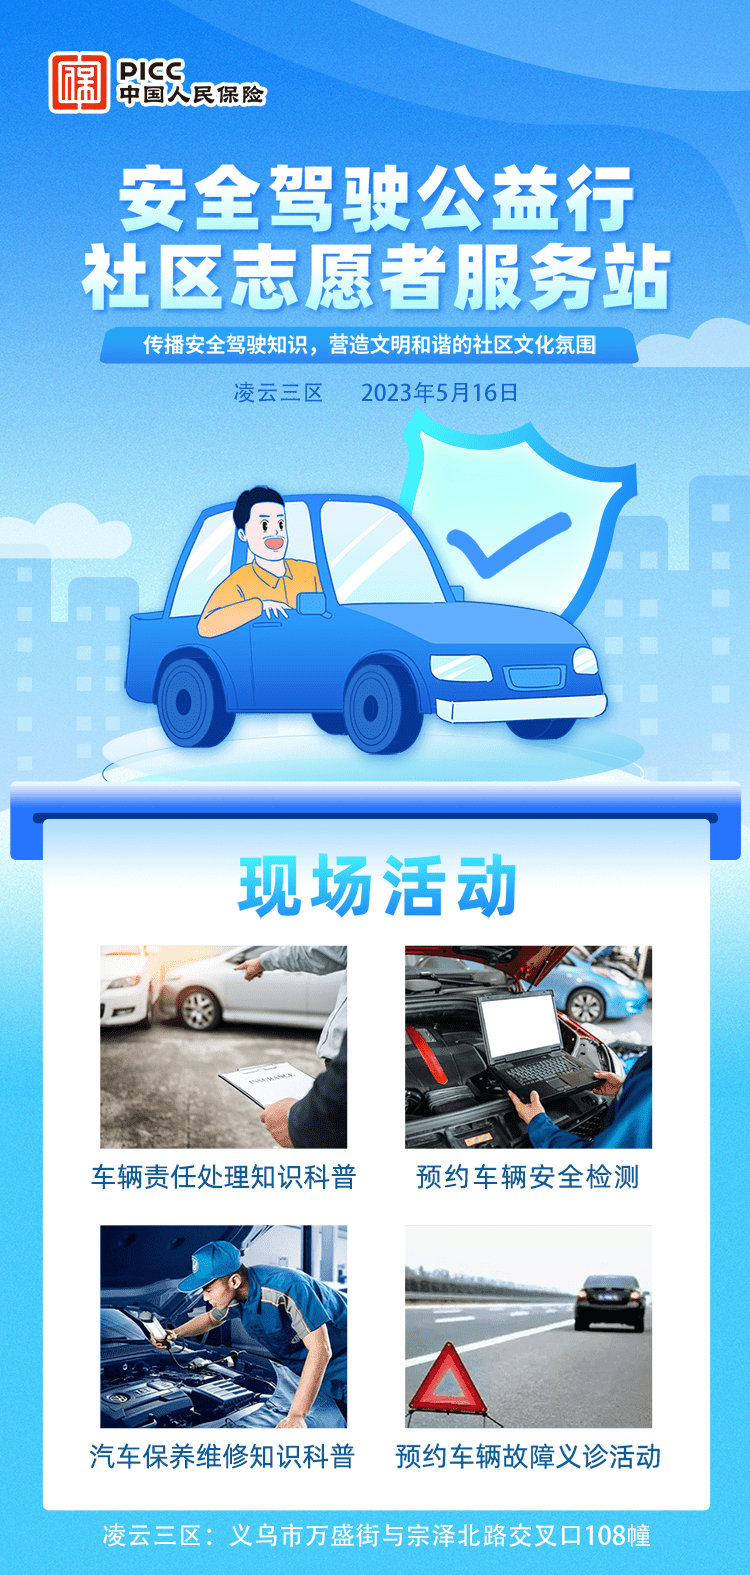 安全驾驶公益行 社区志愿者服务-凌云三区站